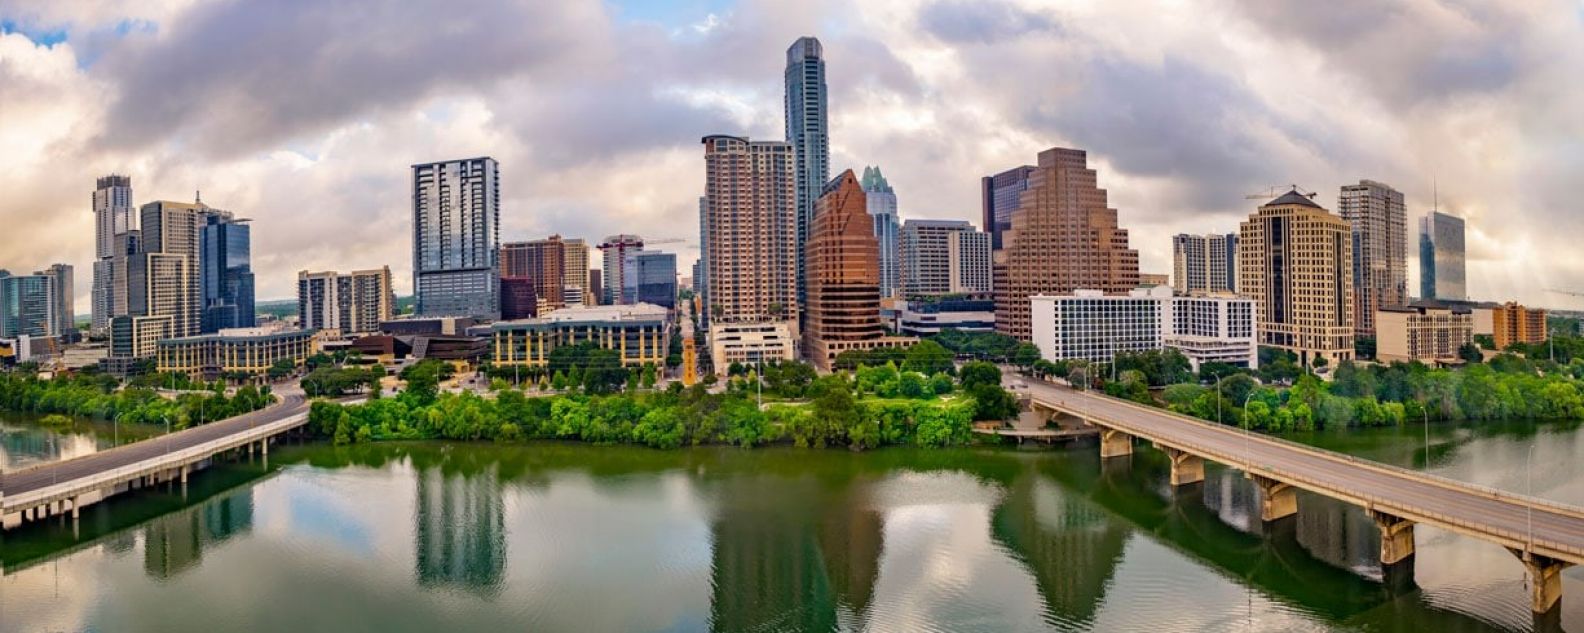 Vista de la ciudad de Texas, incluido el puente Congress Avenue sobre el lago Ladybird, Austin